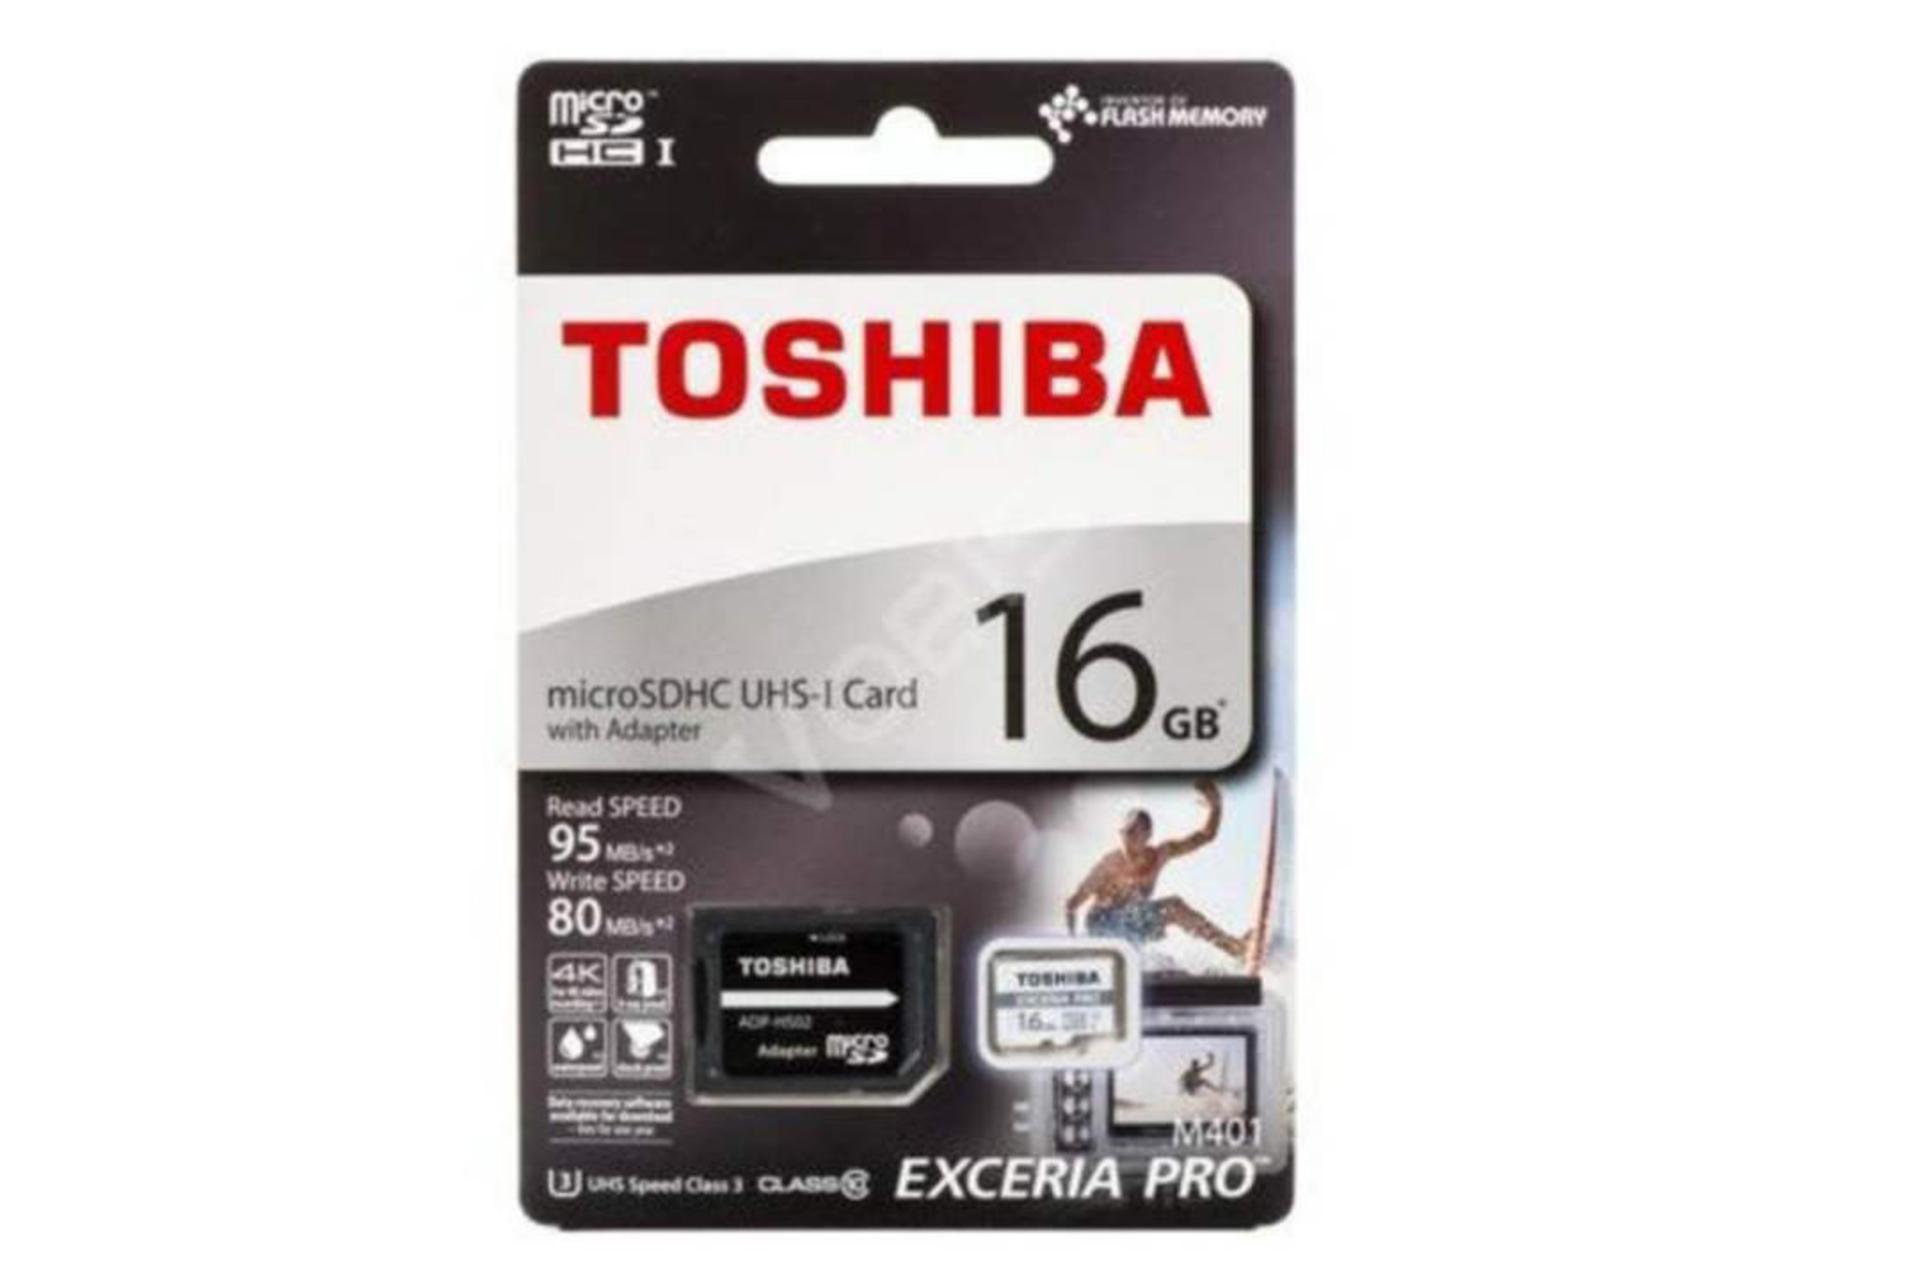 مرجع متخصصين ايران Toshiba M401 microSDHC Class 10 UHS-I U1 16GB